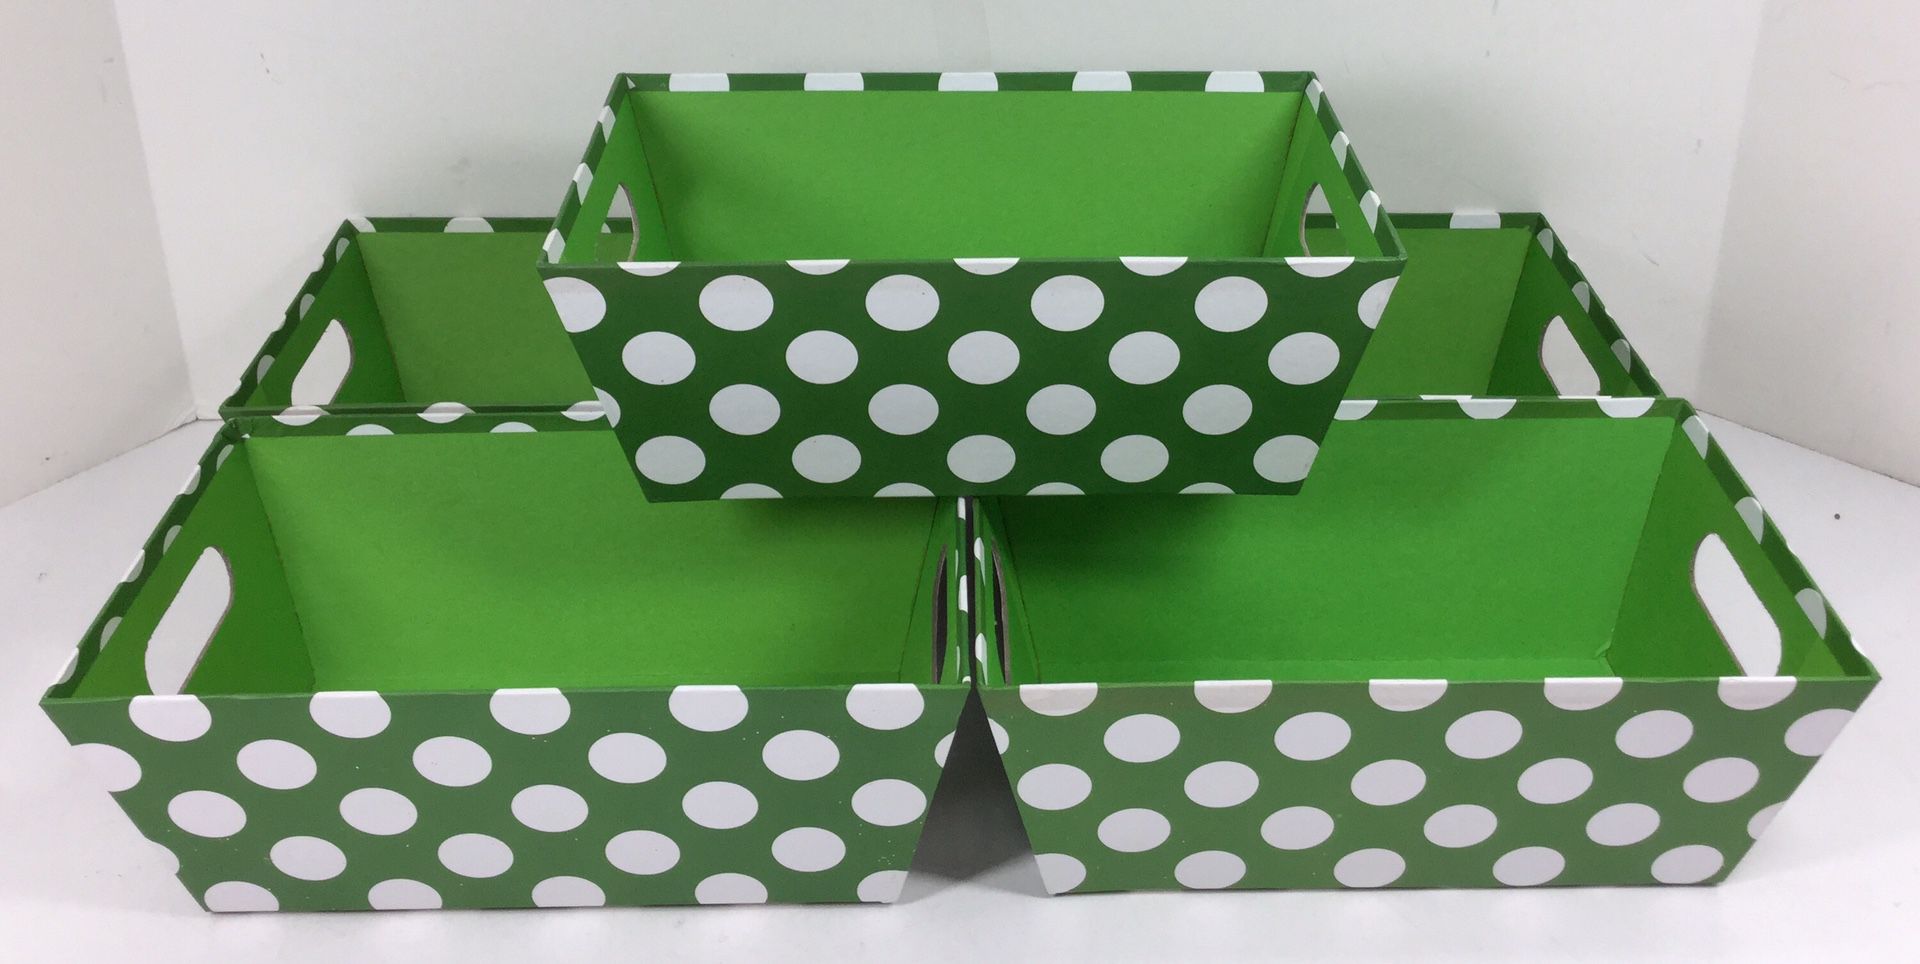 Green Polka Dot Individual Gift Baskets - New! - Buy 2 Get 1 Free!